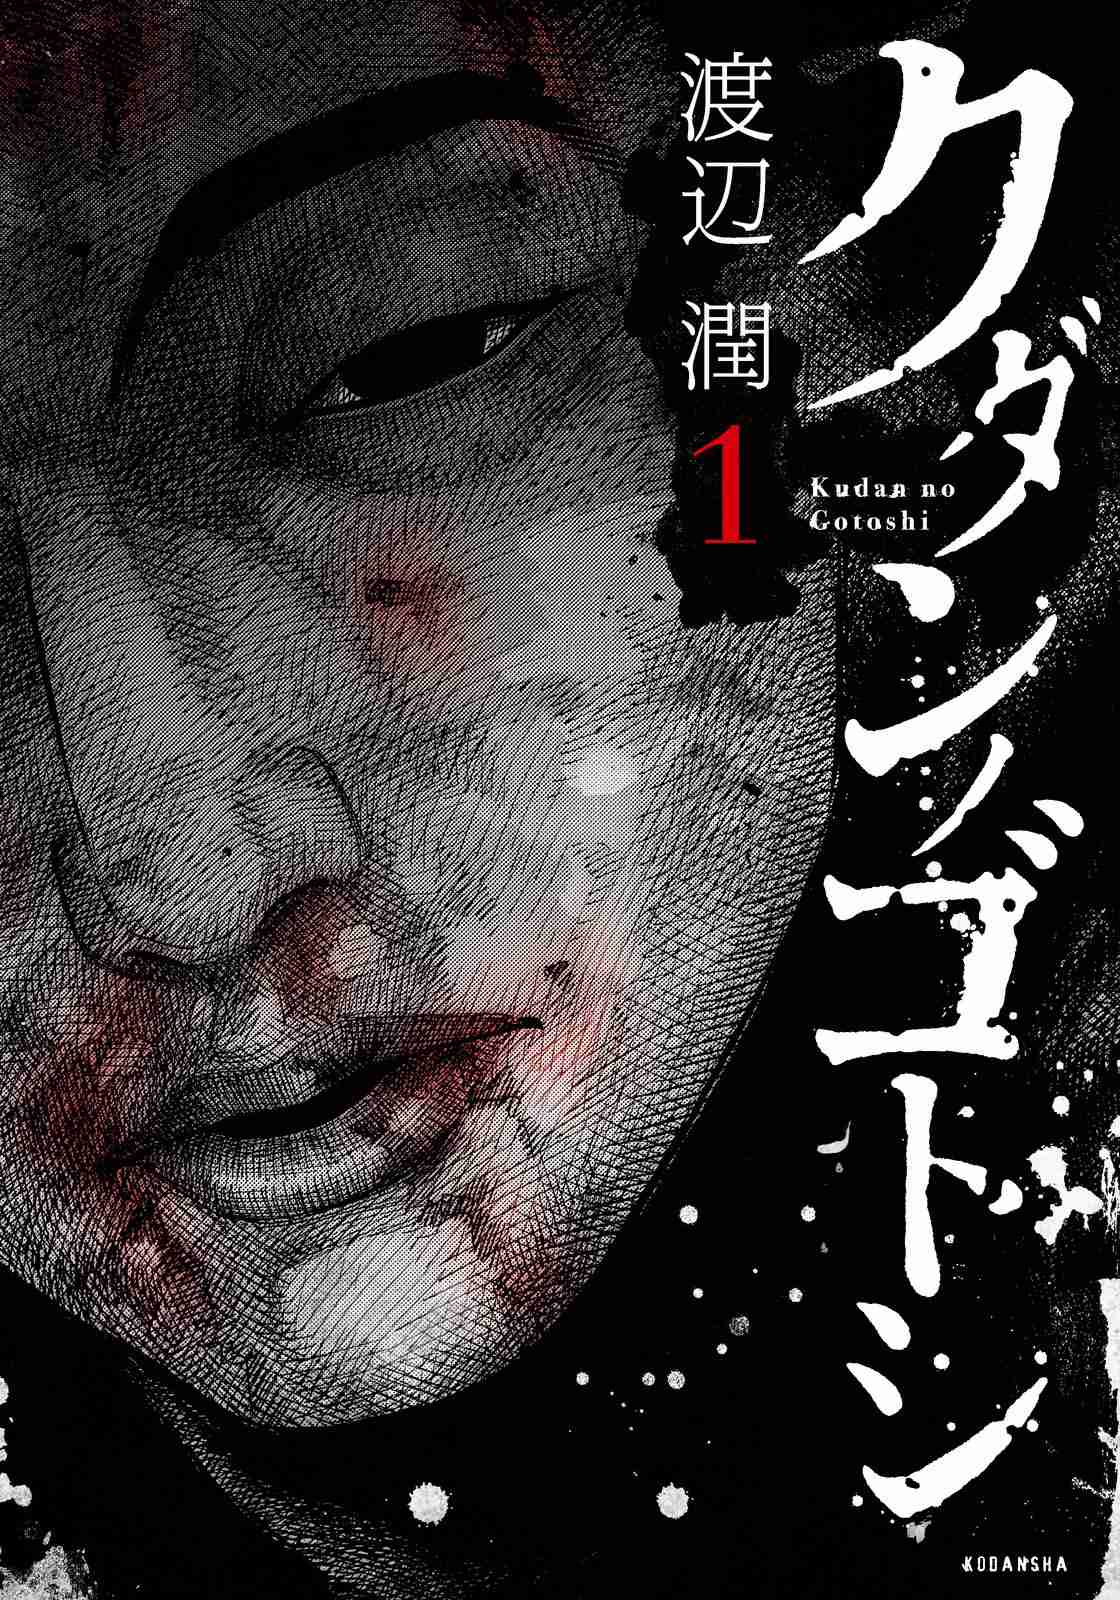 Kudan no Gotoshi Vol. 1 Ch. 7 Chizuru Sakurai « Part 1 »